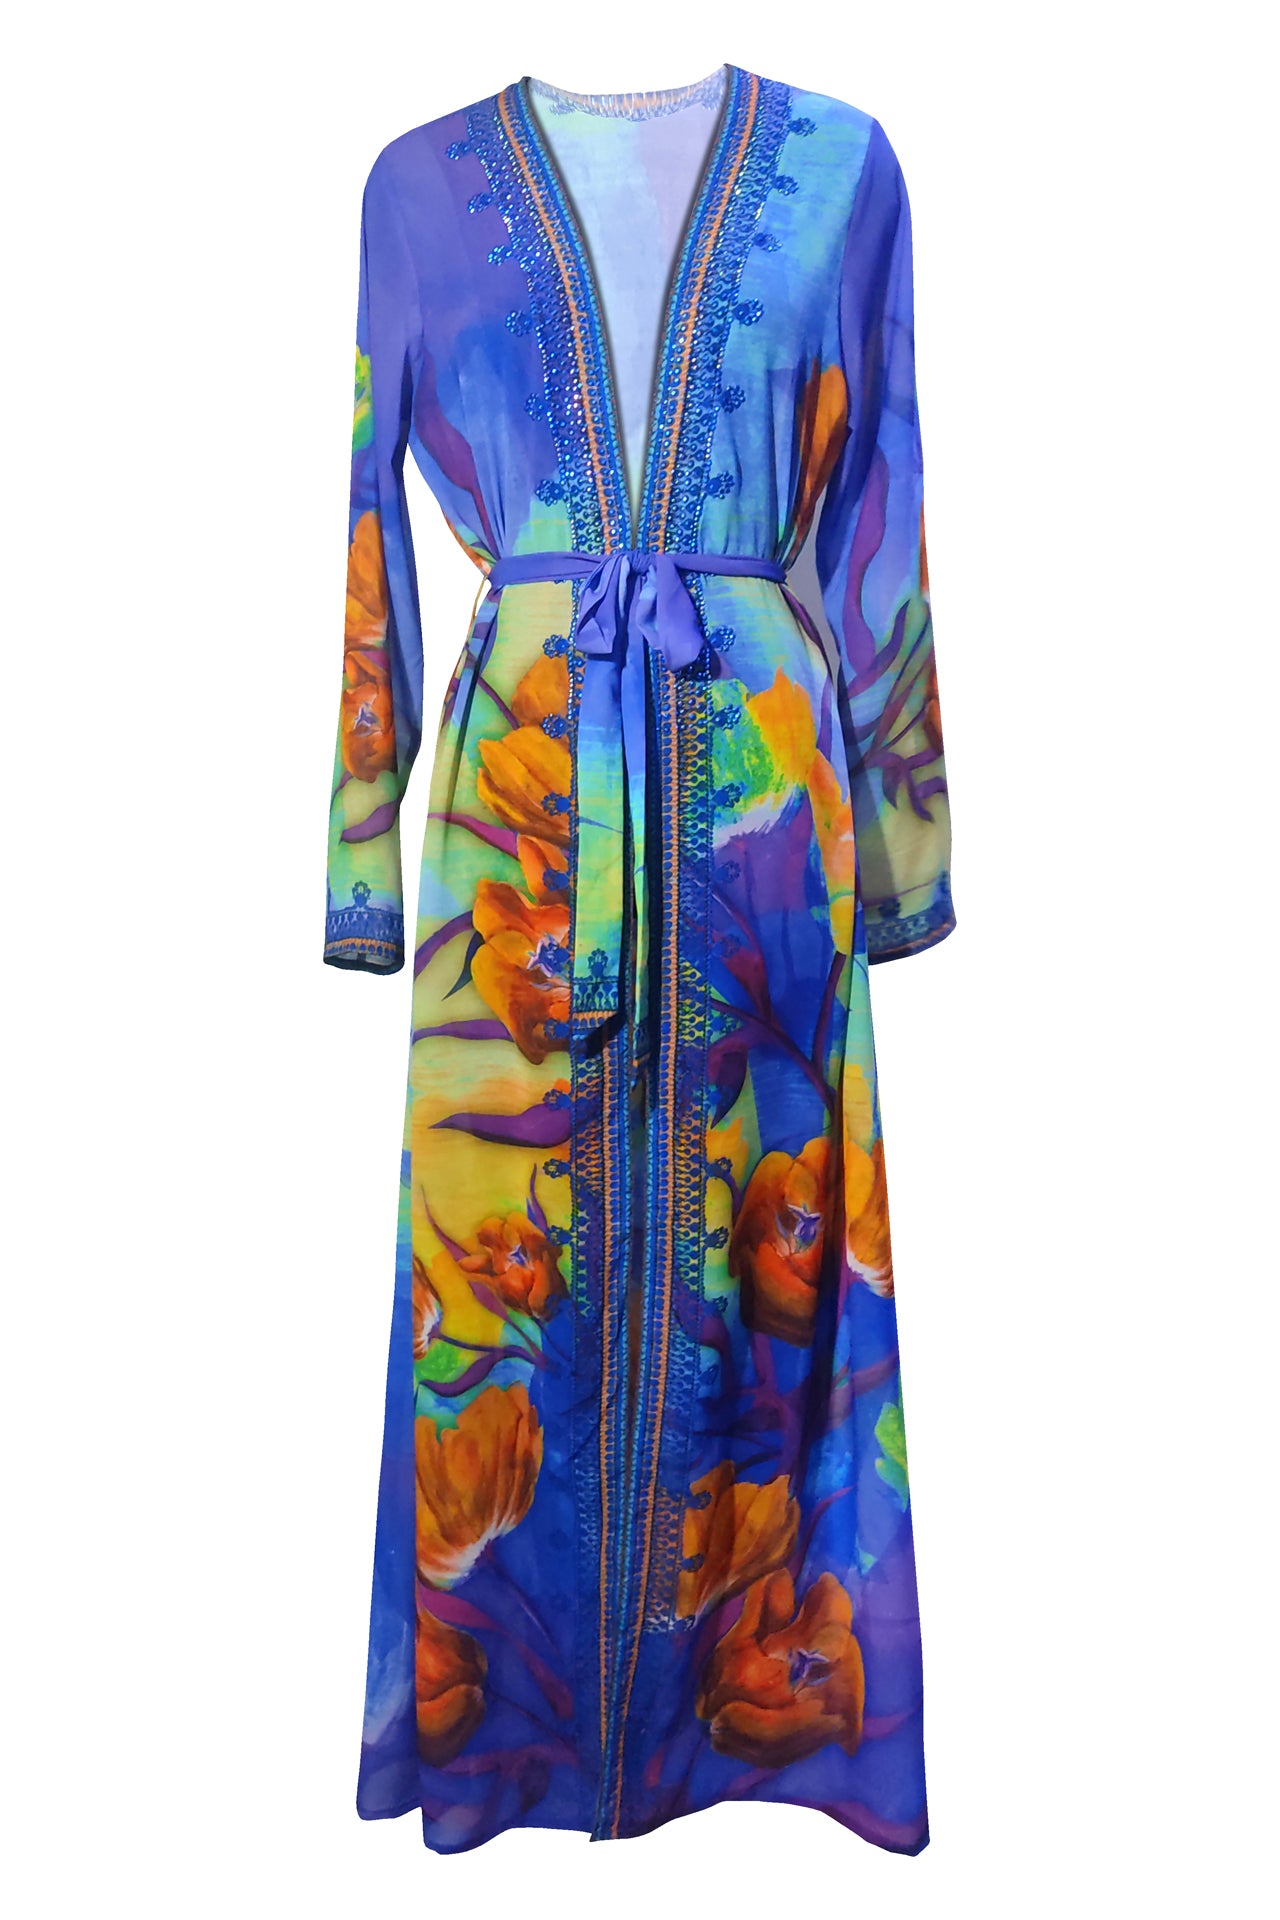 Designer Beach Kimono Cover Up | Caftan Cover Up | Shahida Parides S-M